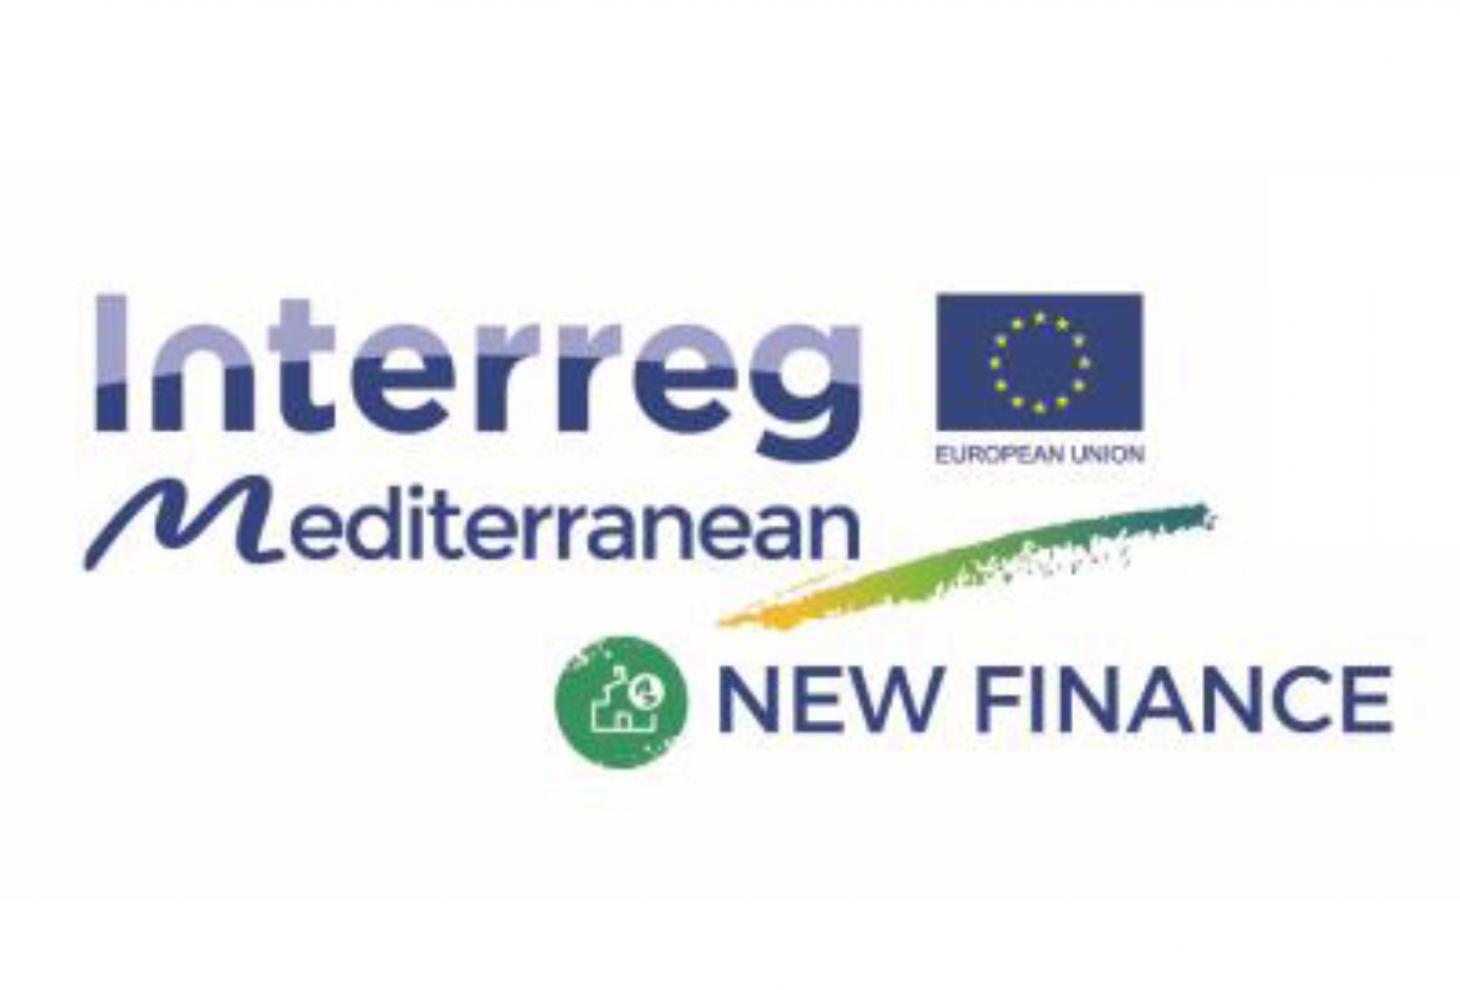 Logo Interreg Mediterranean progetto New Finance 